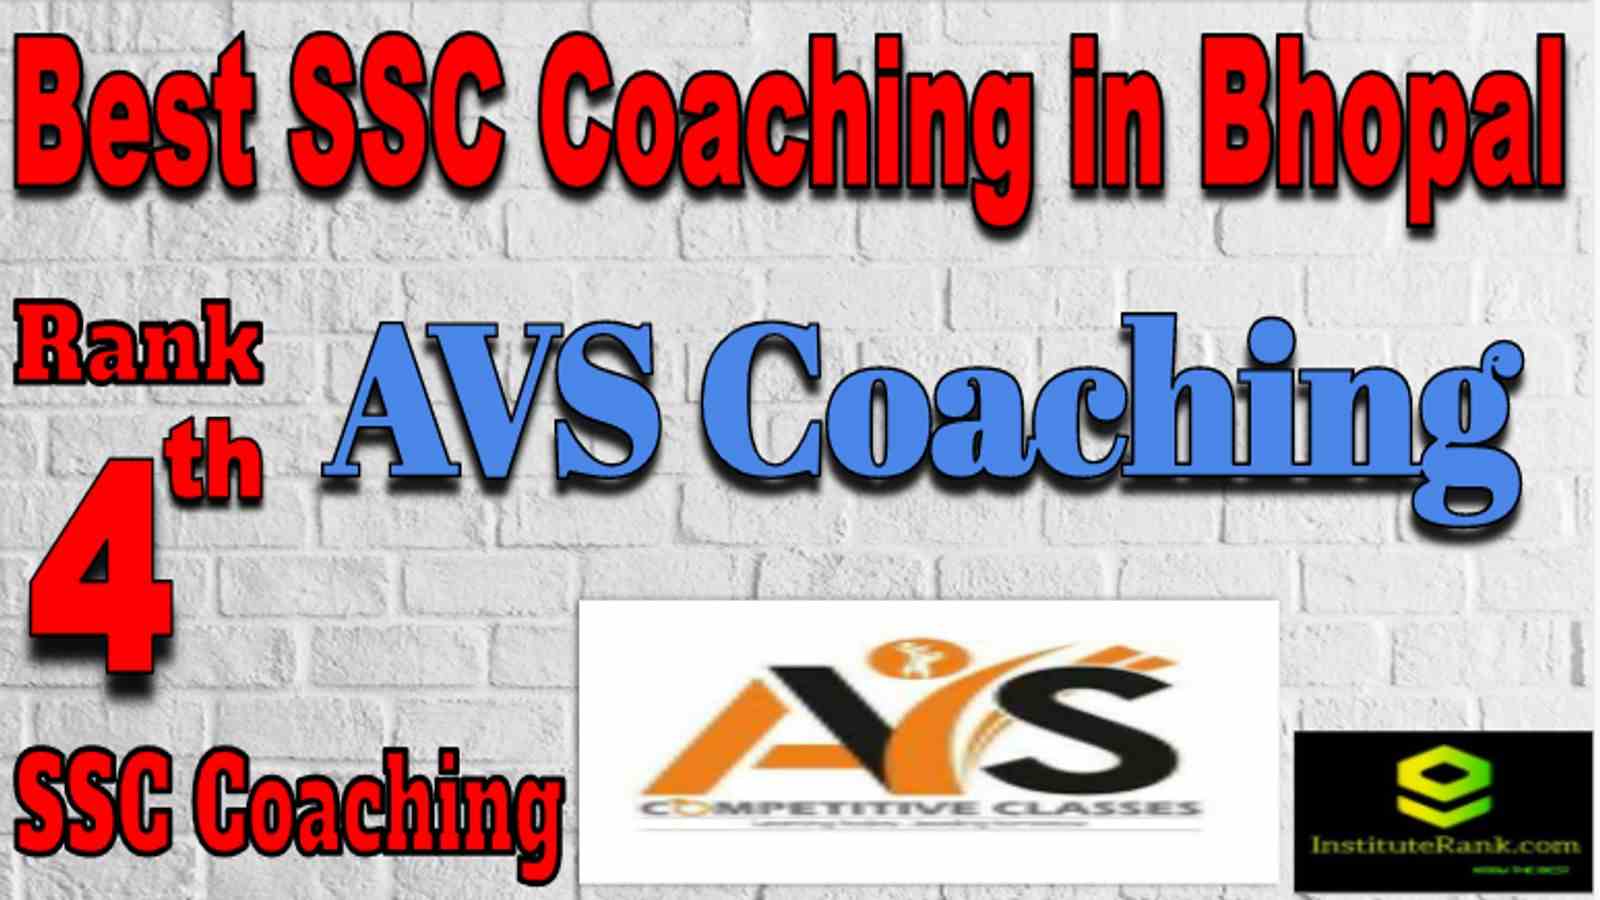 Rank 4 Best SSC Coaching in Bhopal